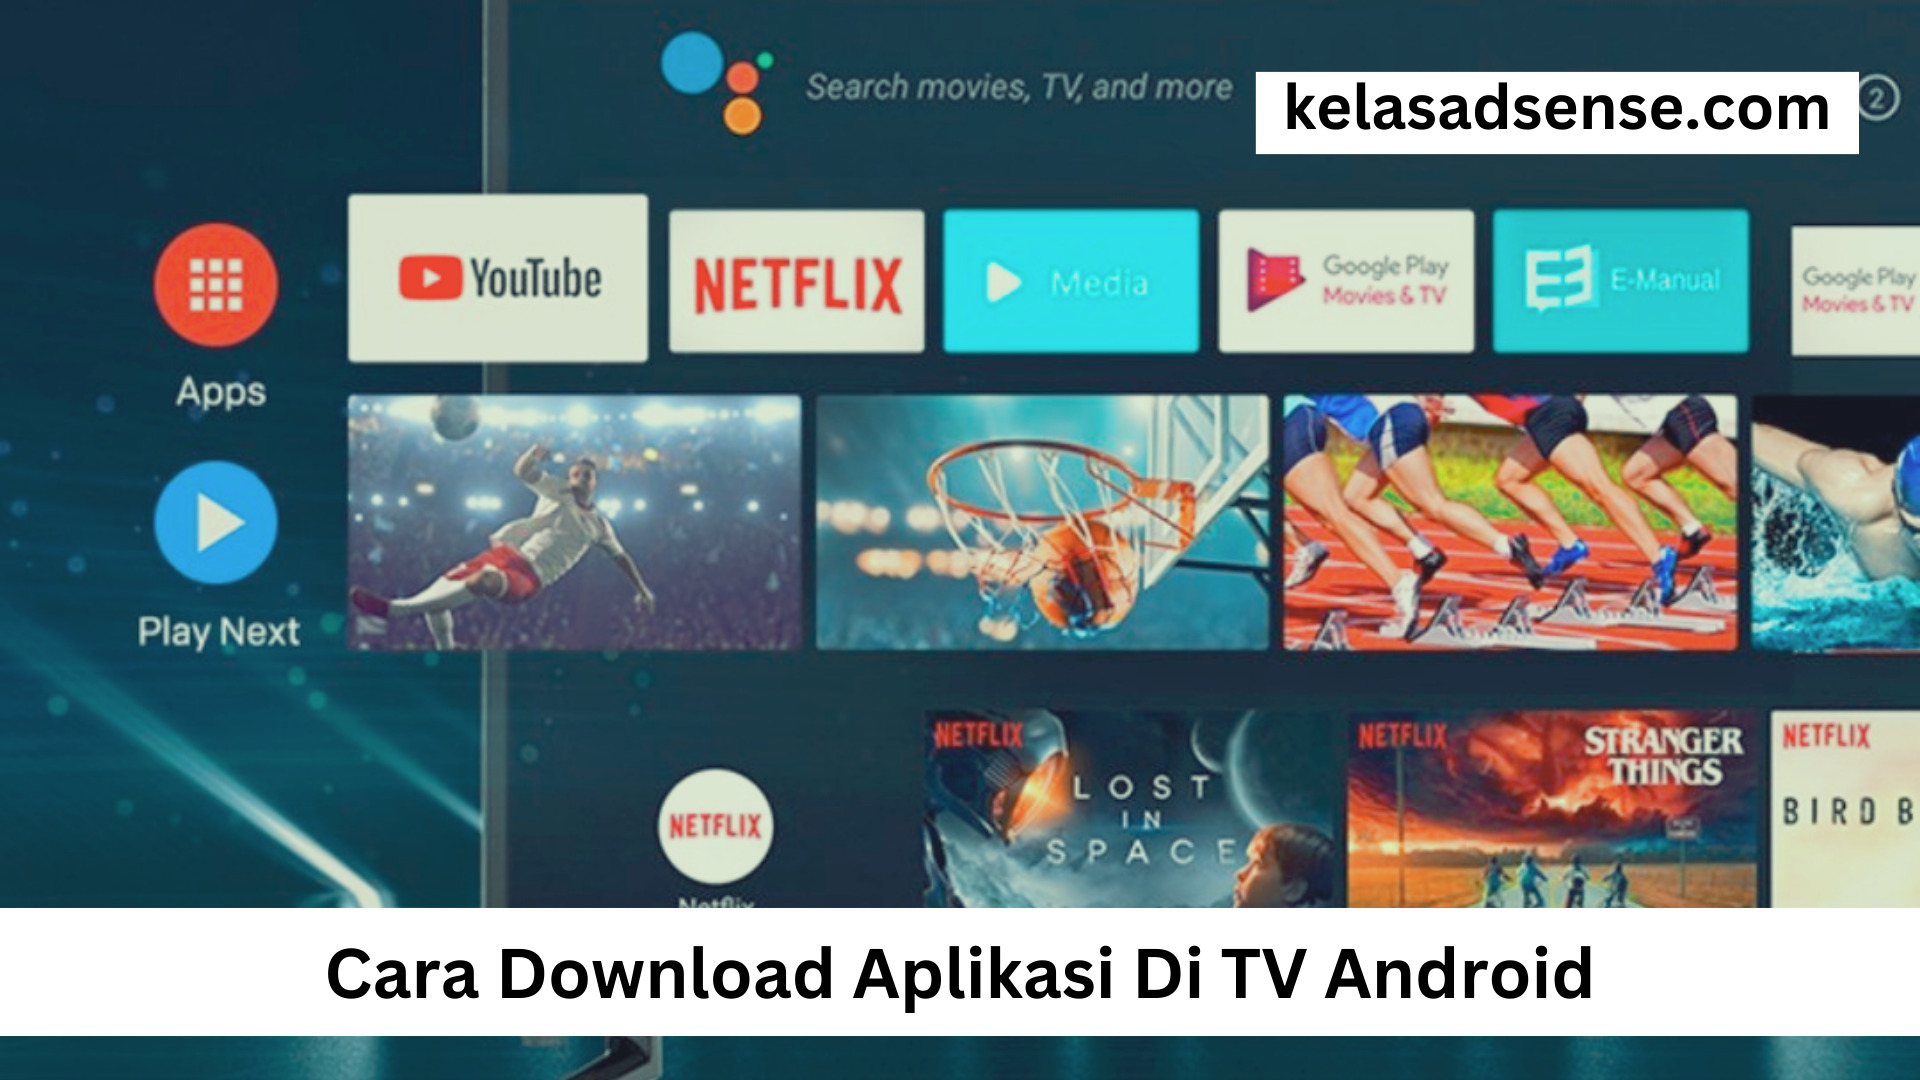 Cara Download Aplikasi Di TV Android